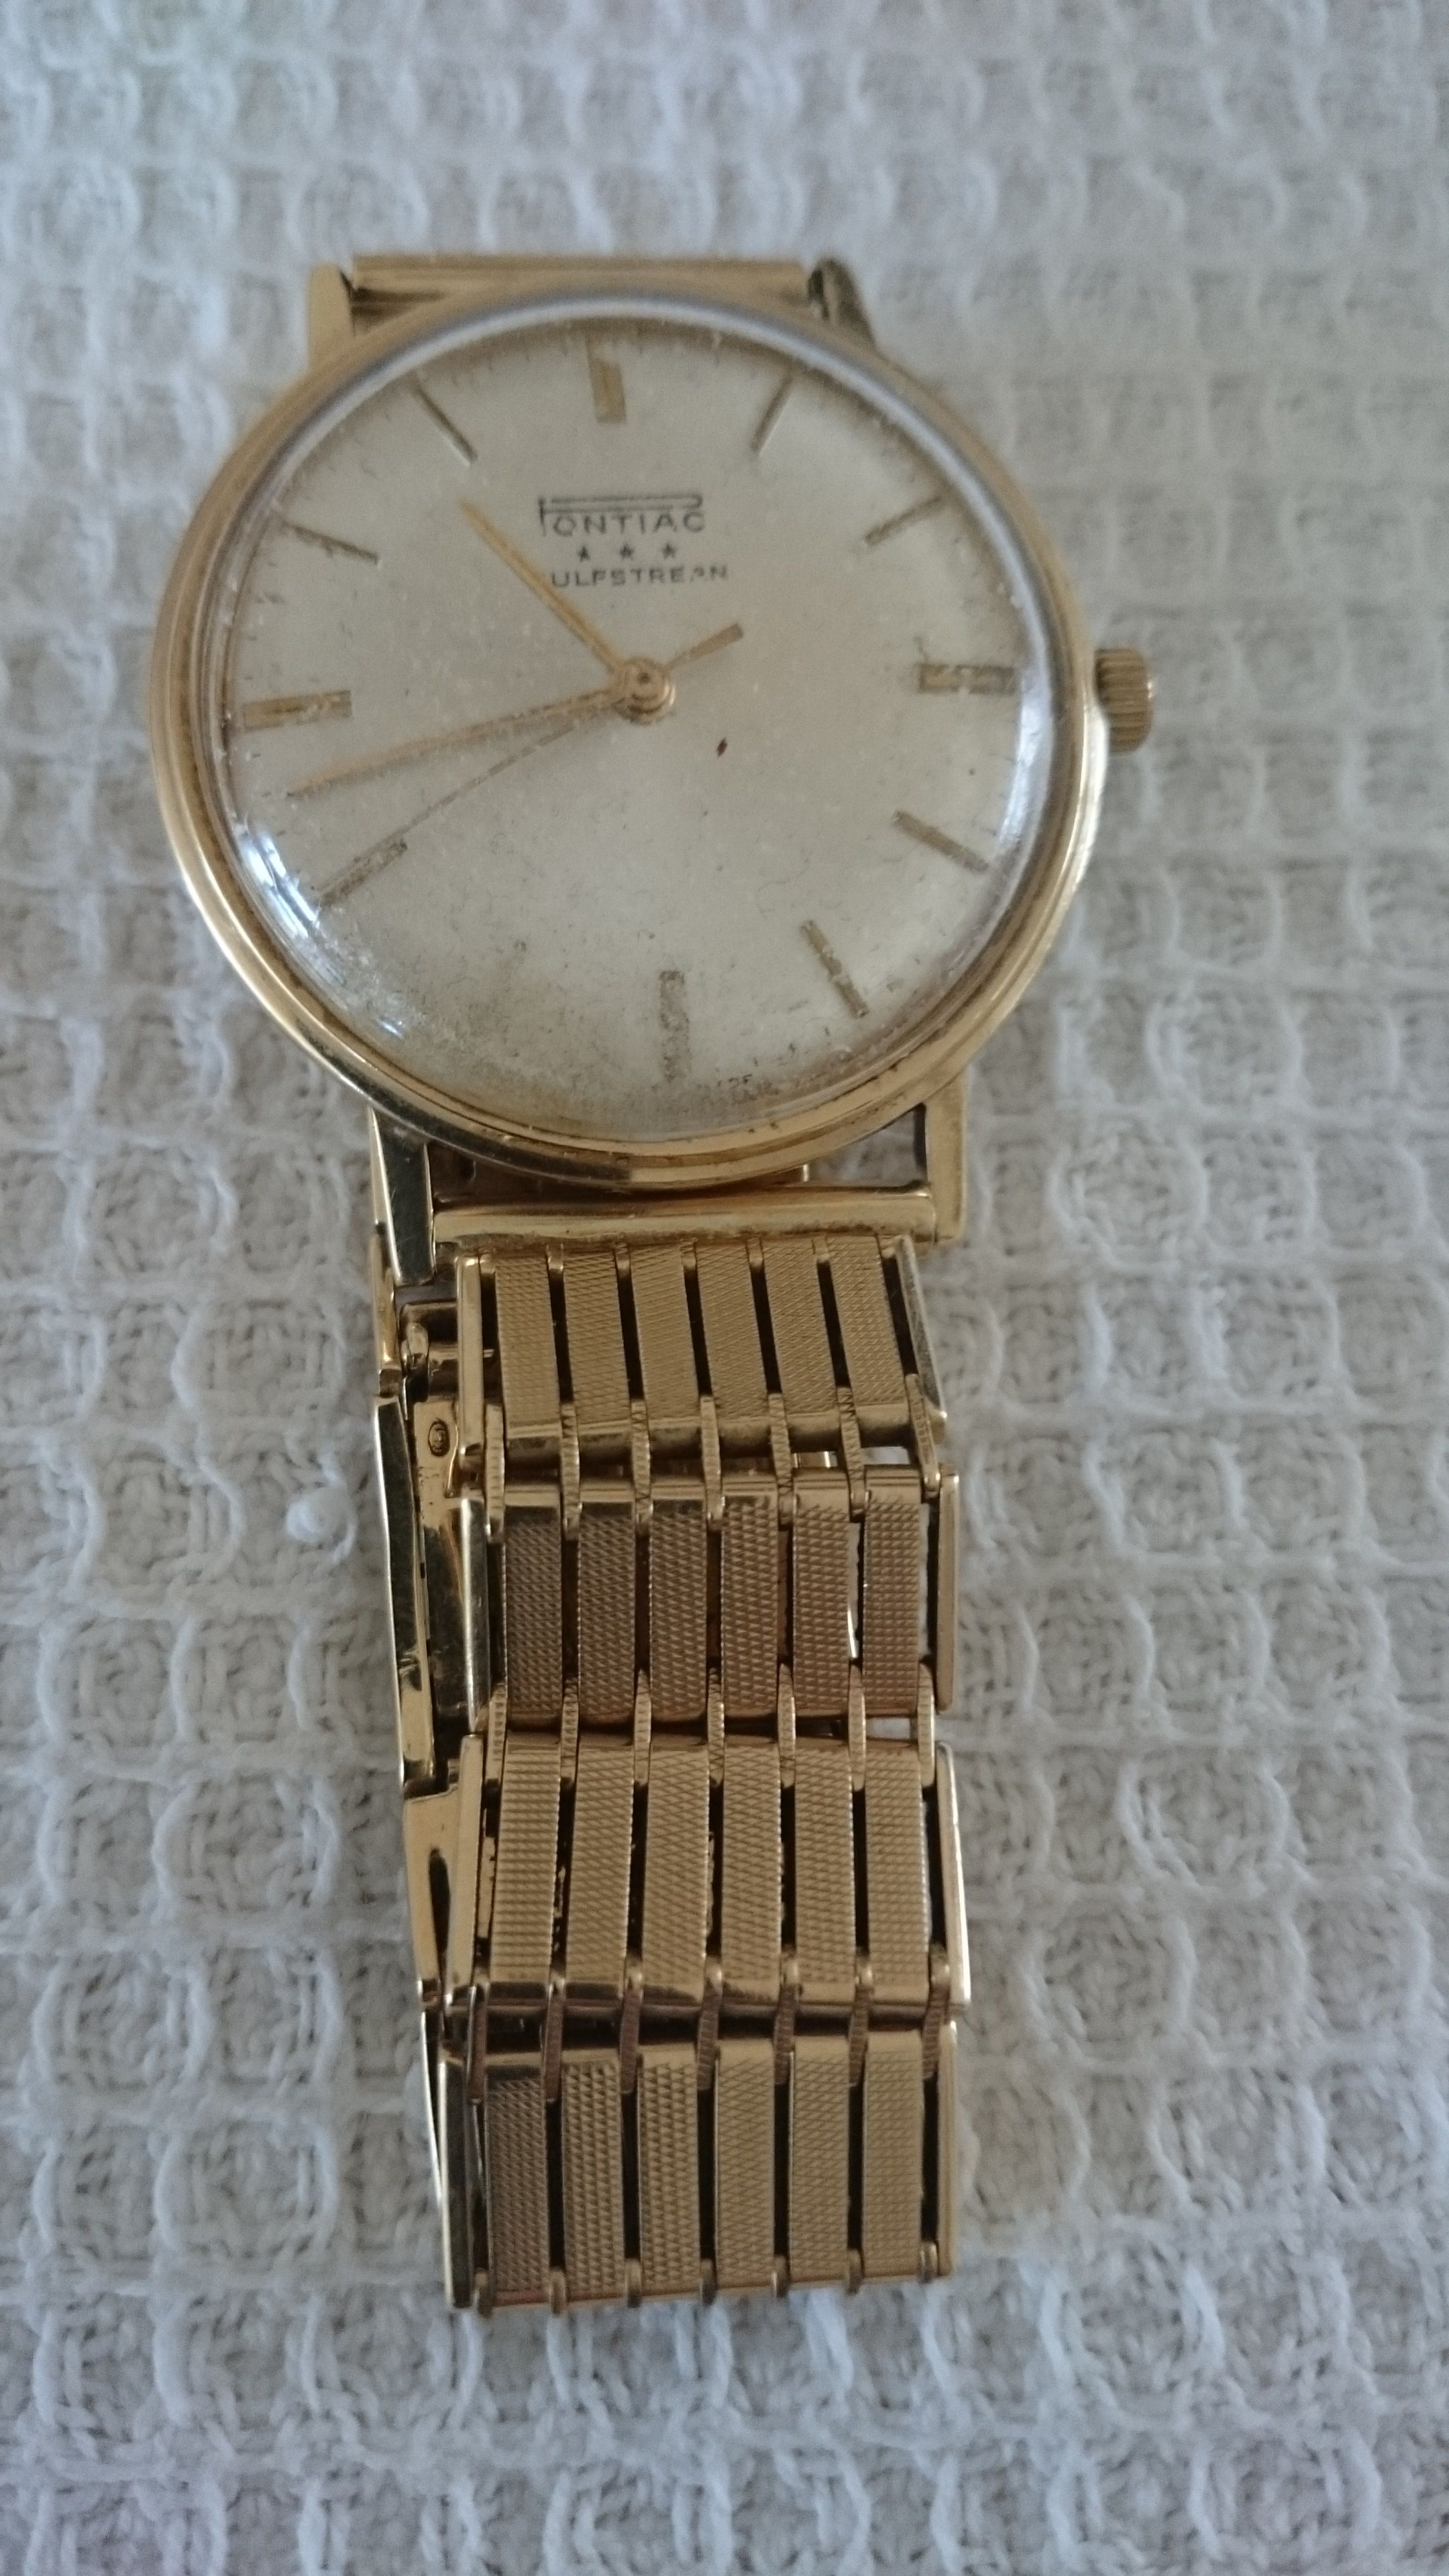 Waarde van een gouden Pontiac? - Vintage Horlogeforum - Horlogeforum.nl - het voor liefhebbers van horloges